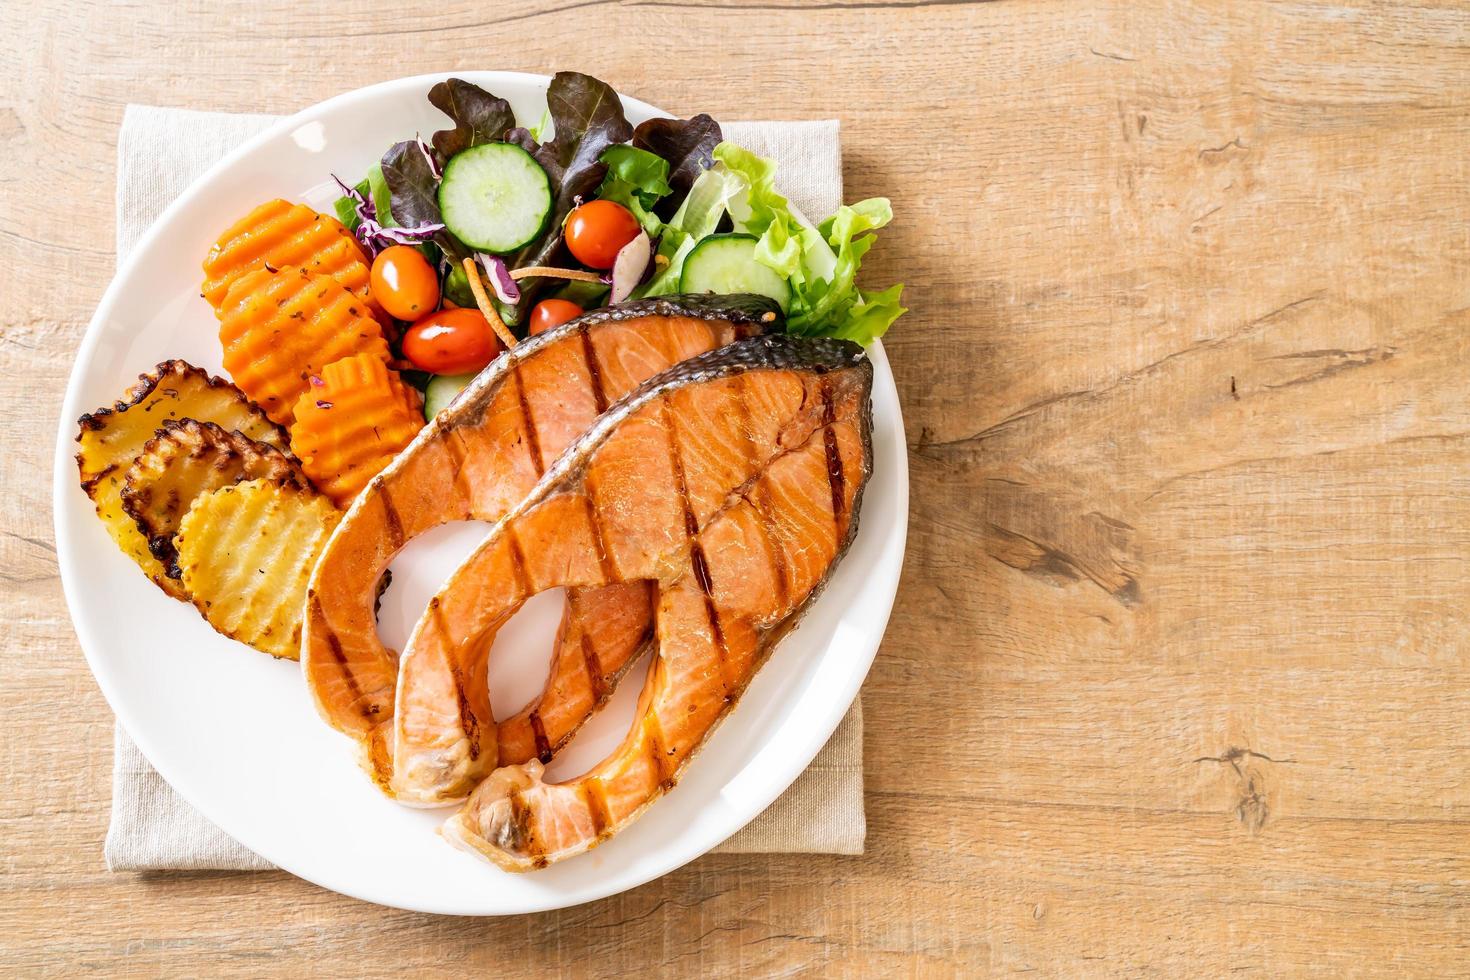 filetto di salmone alla doppia griglia con verdure foto